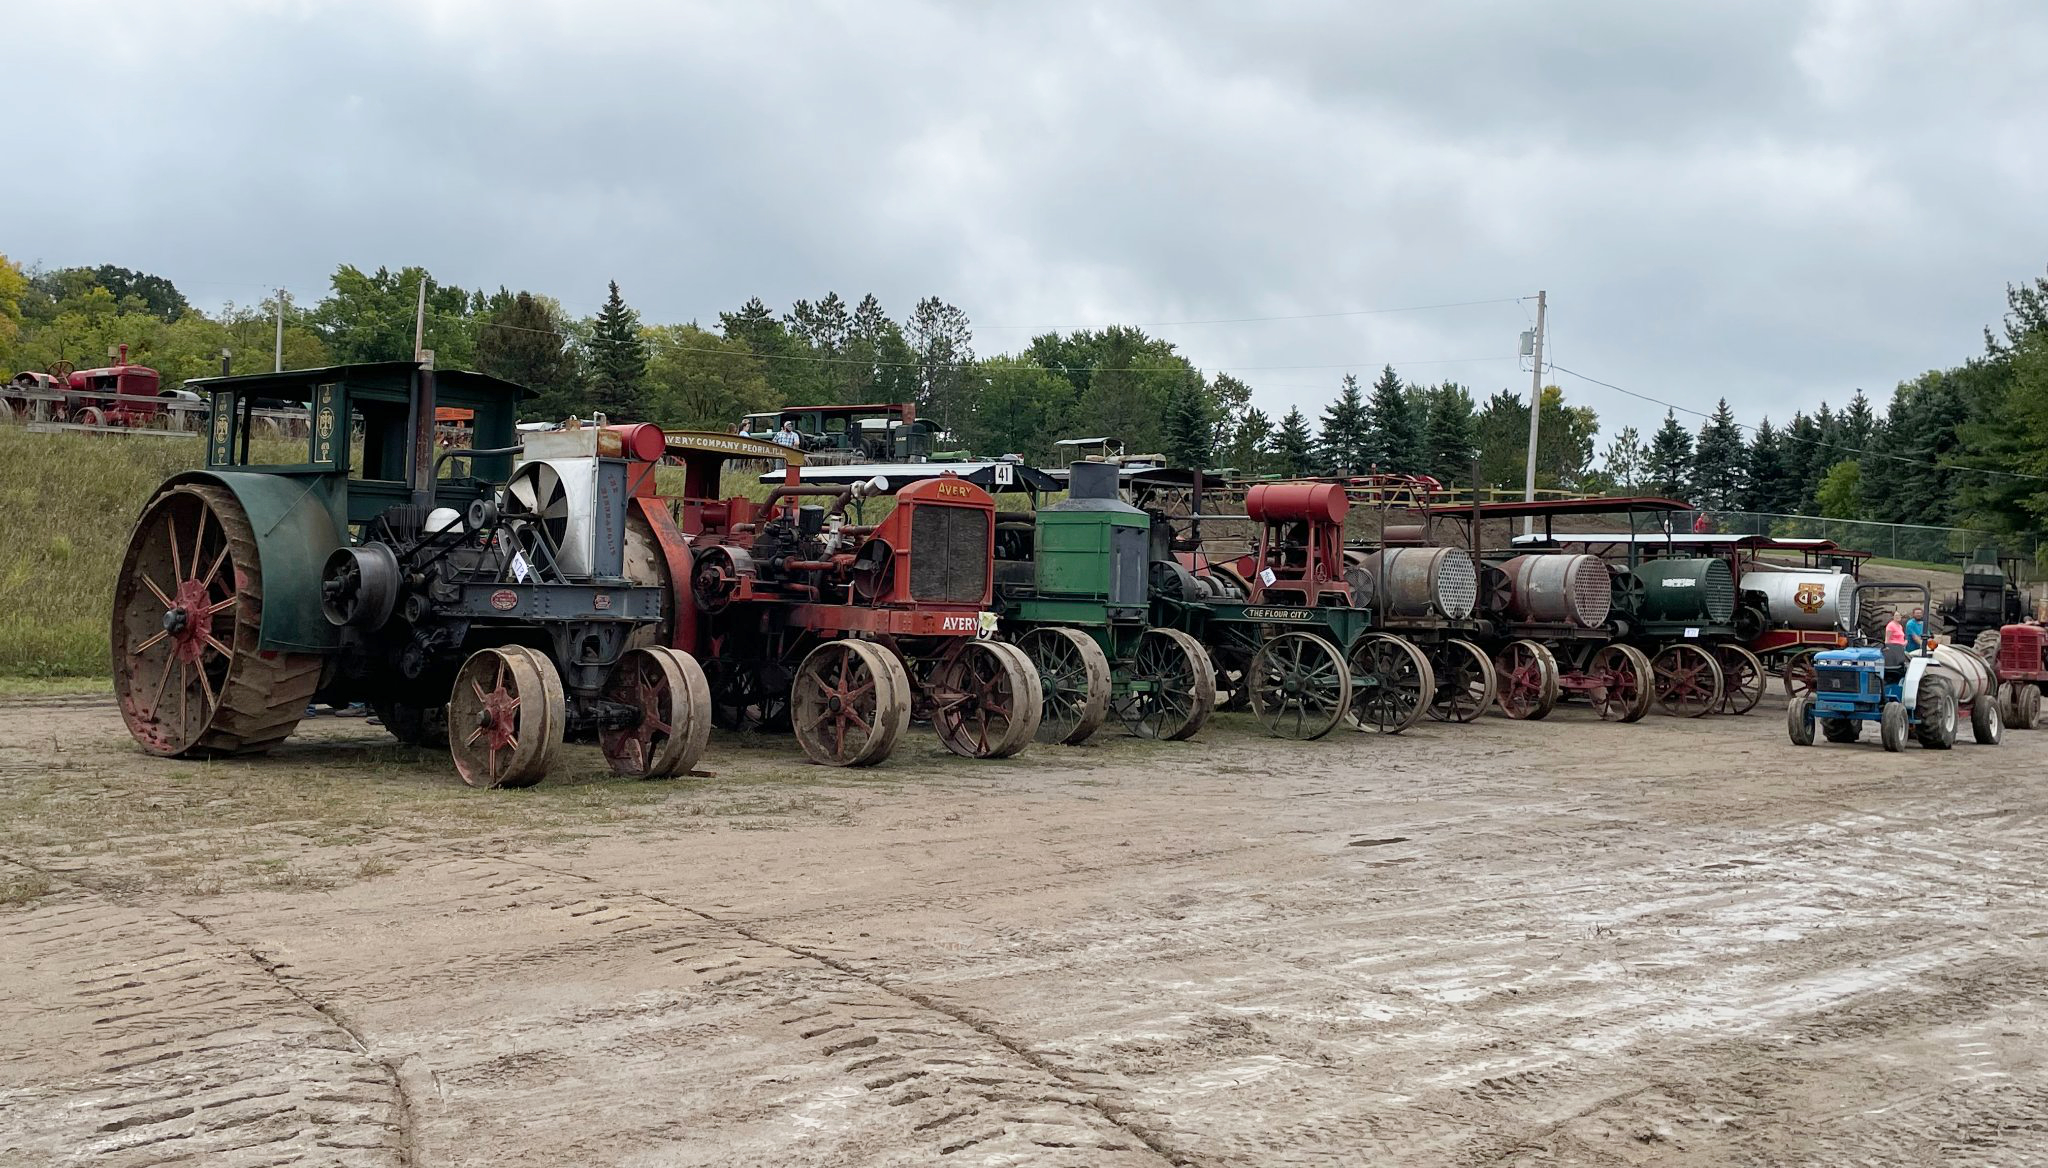 A row of vintage tractors